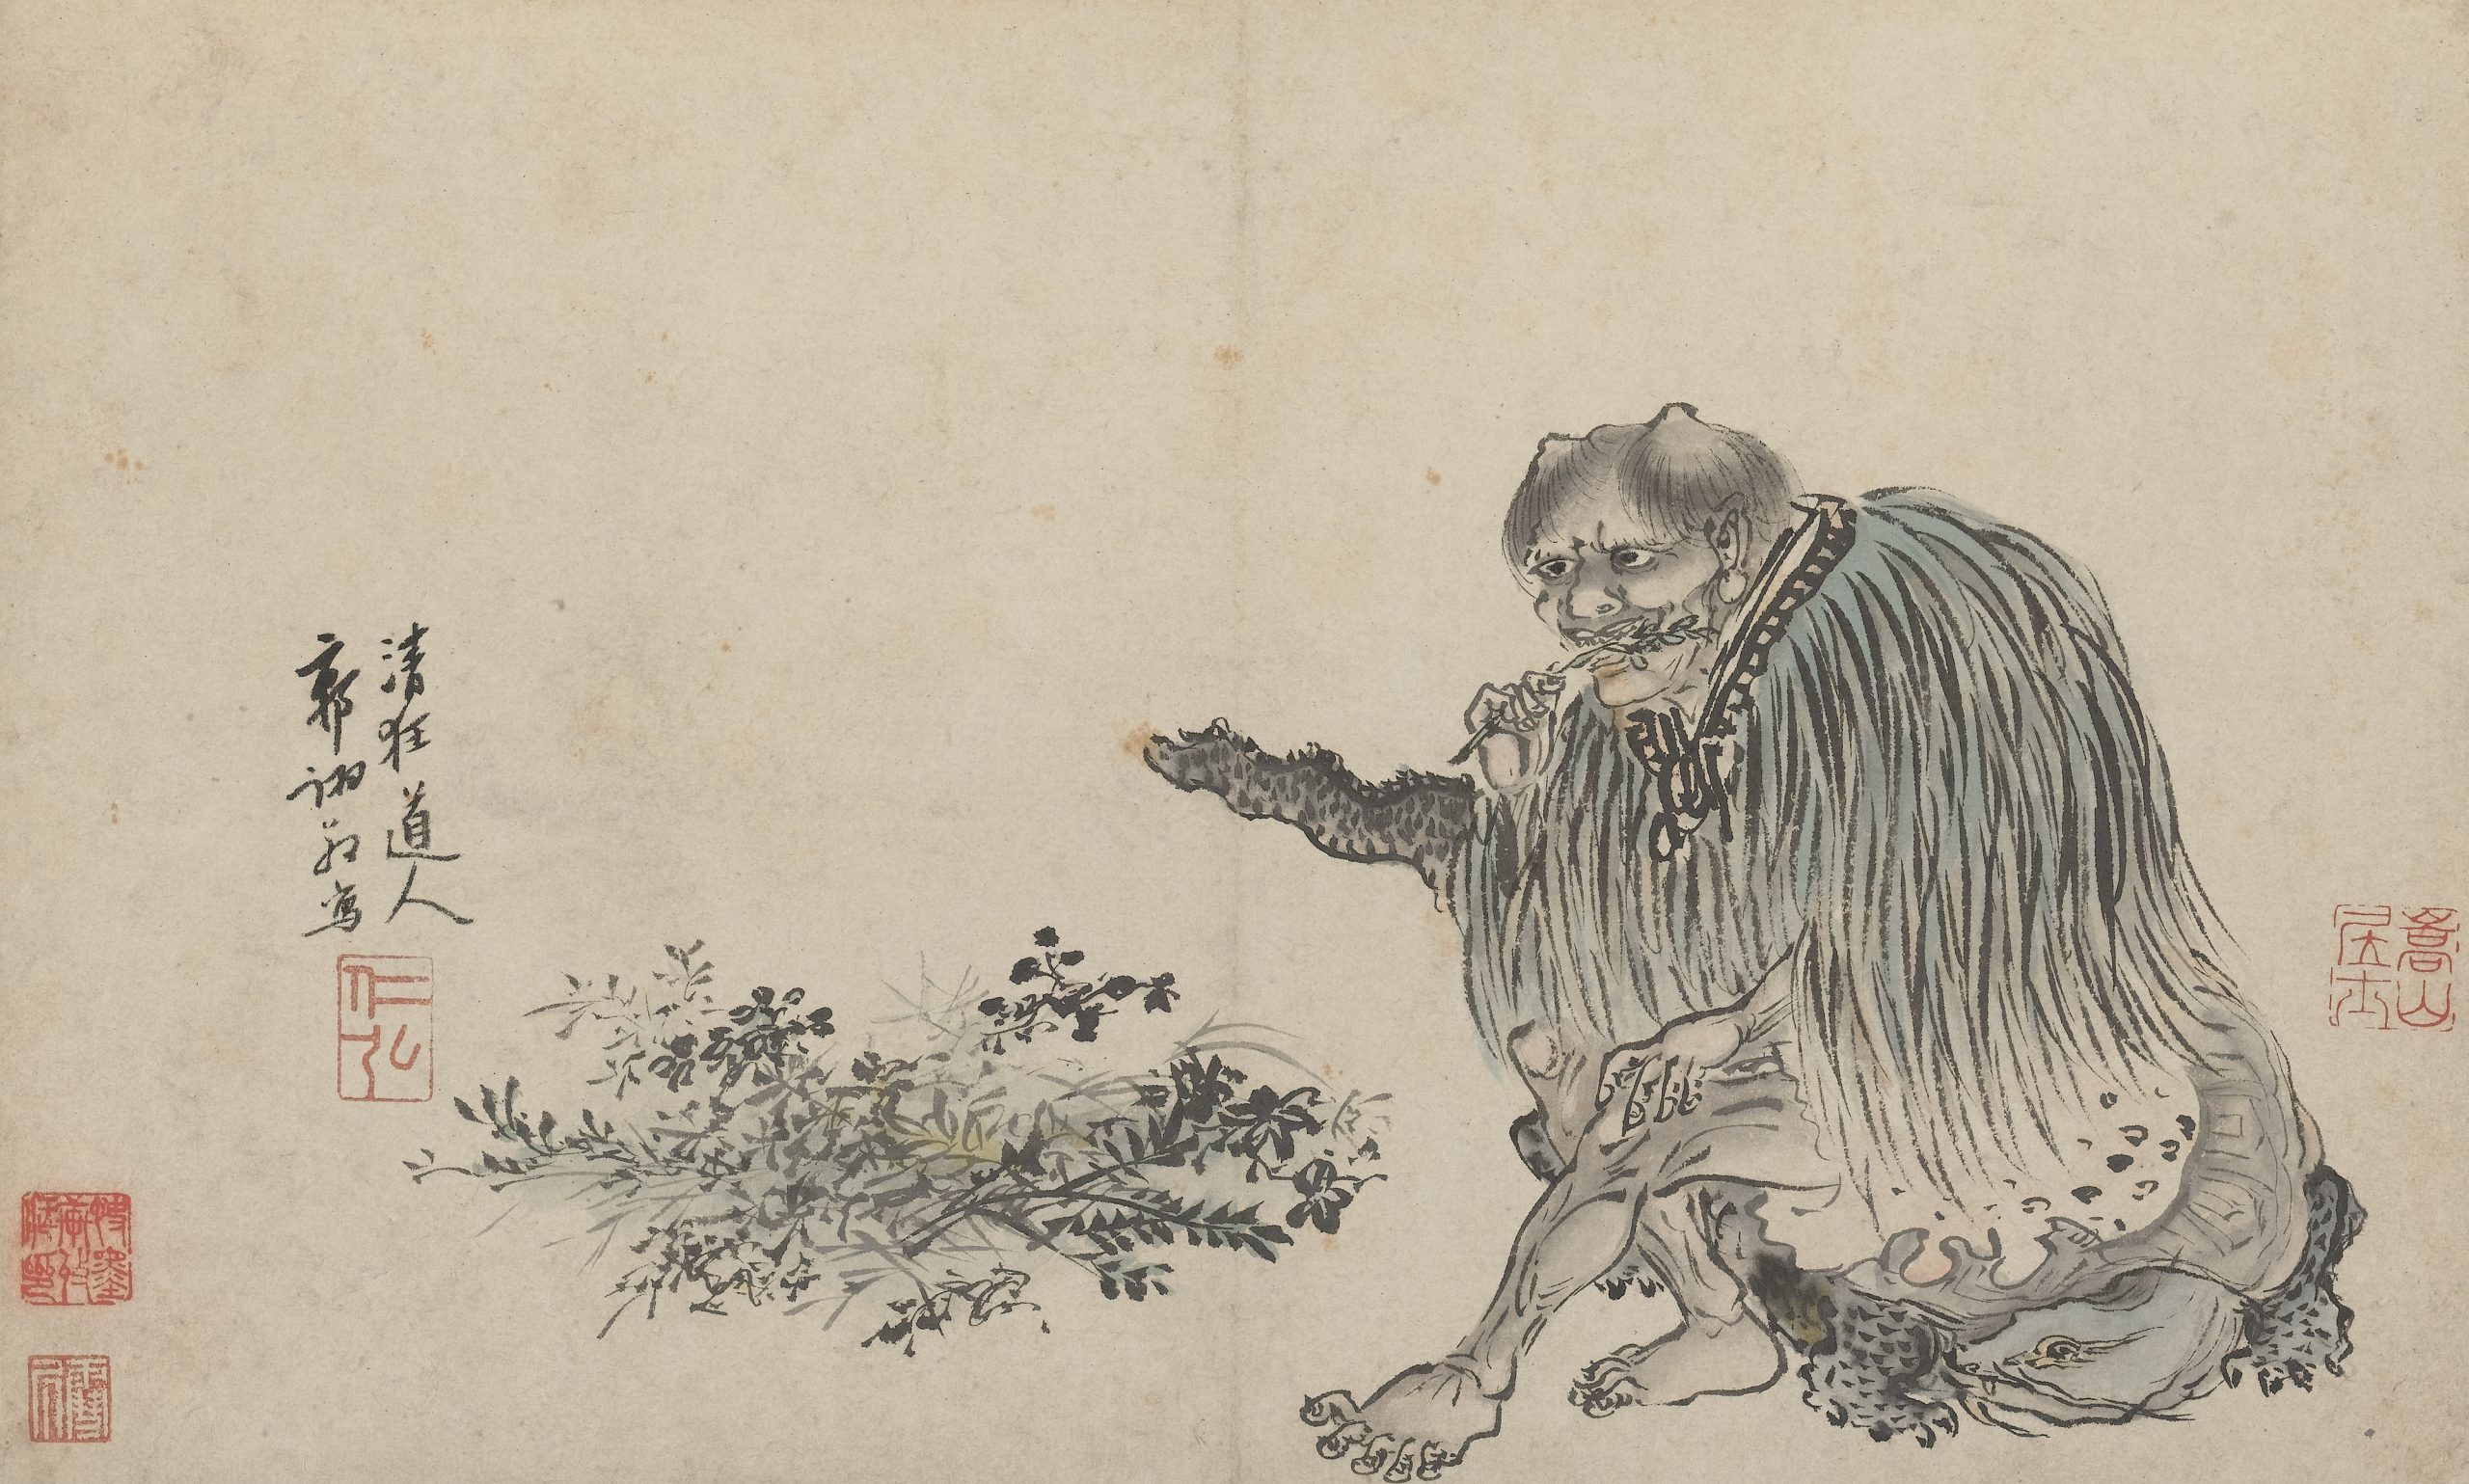 Pintura em preto e branco de Shennong, o Segundo Imperador da China. Ele está sentado, com uma planta na boca e usa um casado de pele animal.